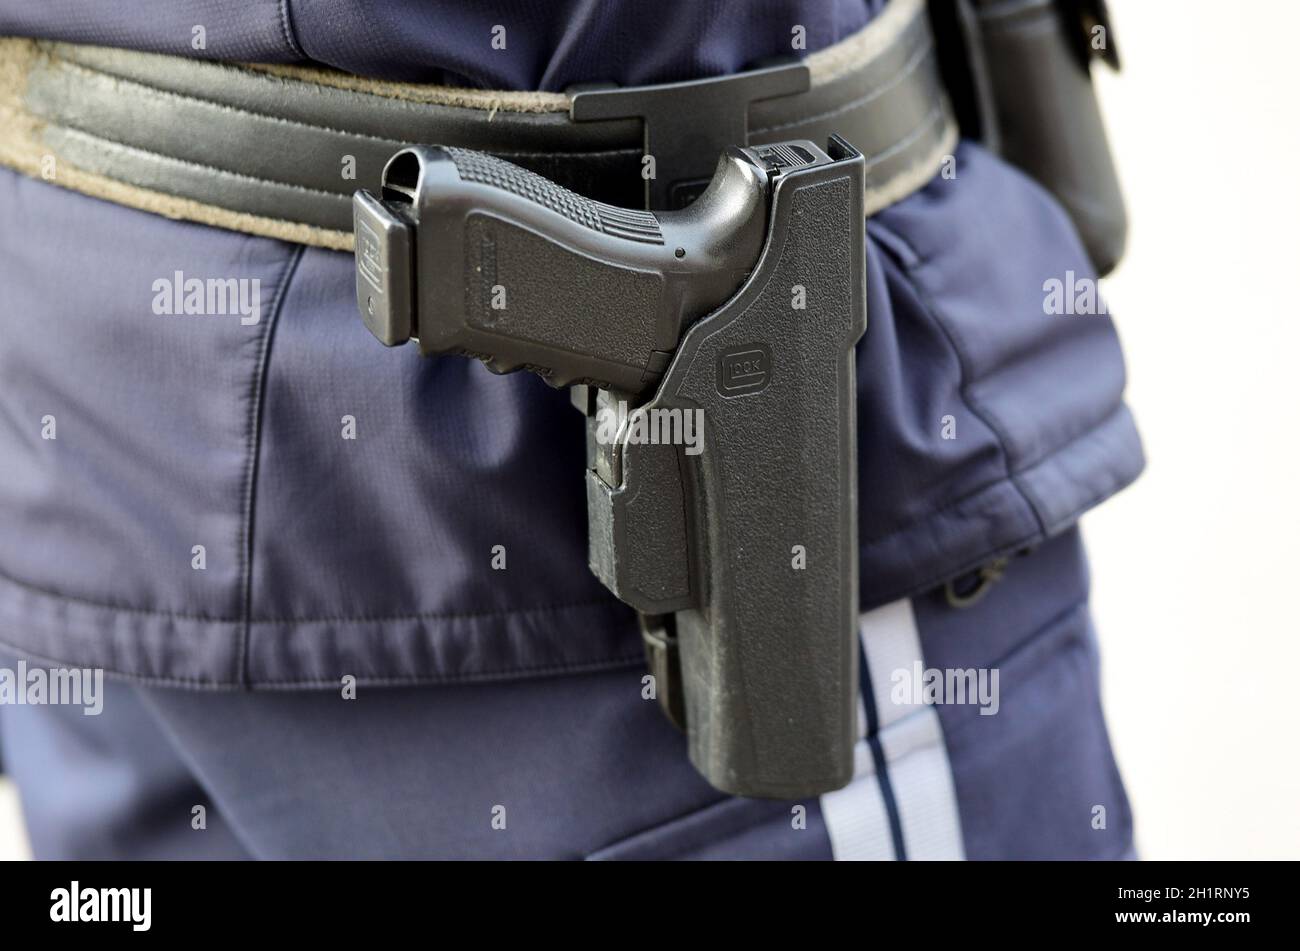 Detailaufnahme einer österreichischen Polizei-Pistole 'Glock', Österreich, Europa - Detail einer österreichischen Polizeipistole 'Glock', Österreich, Europa Stockfoto